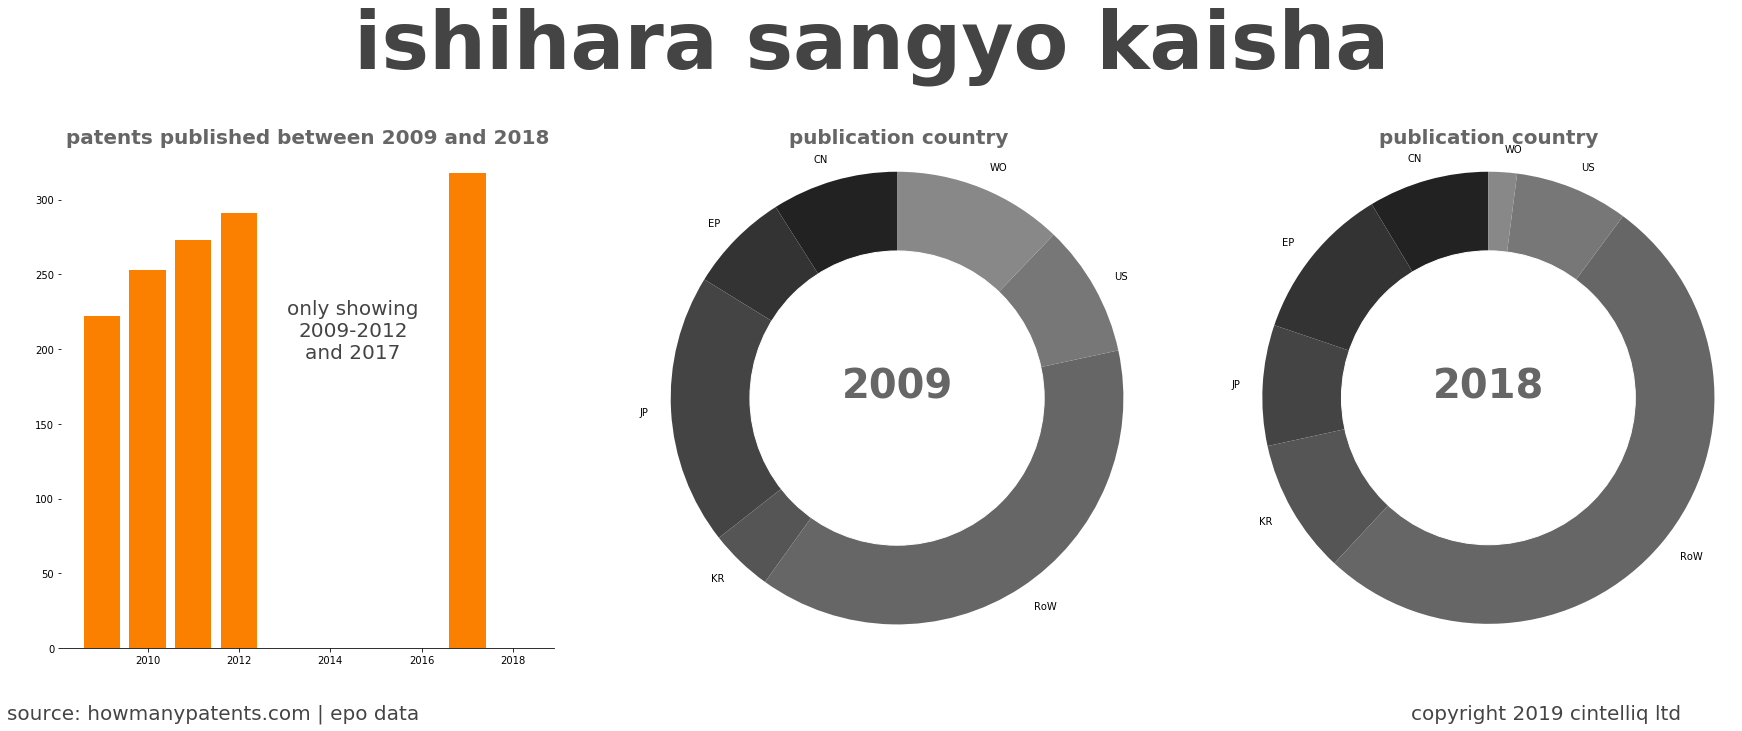 summary of patents for Ishihara Sangyo Kaisha